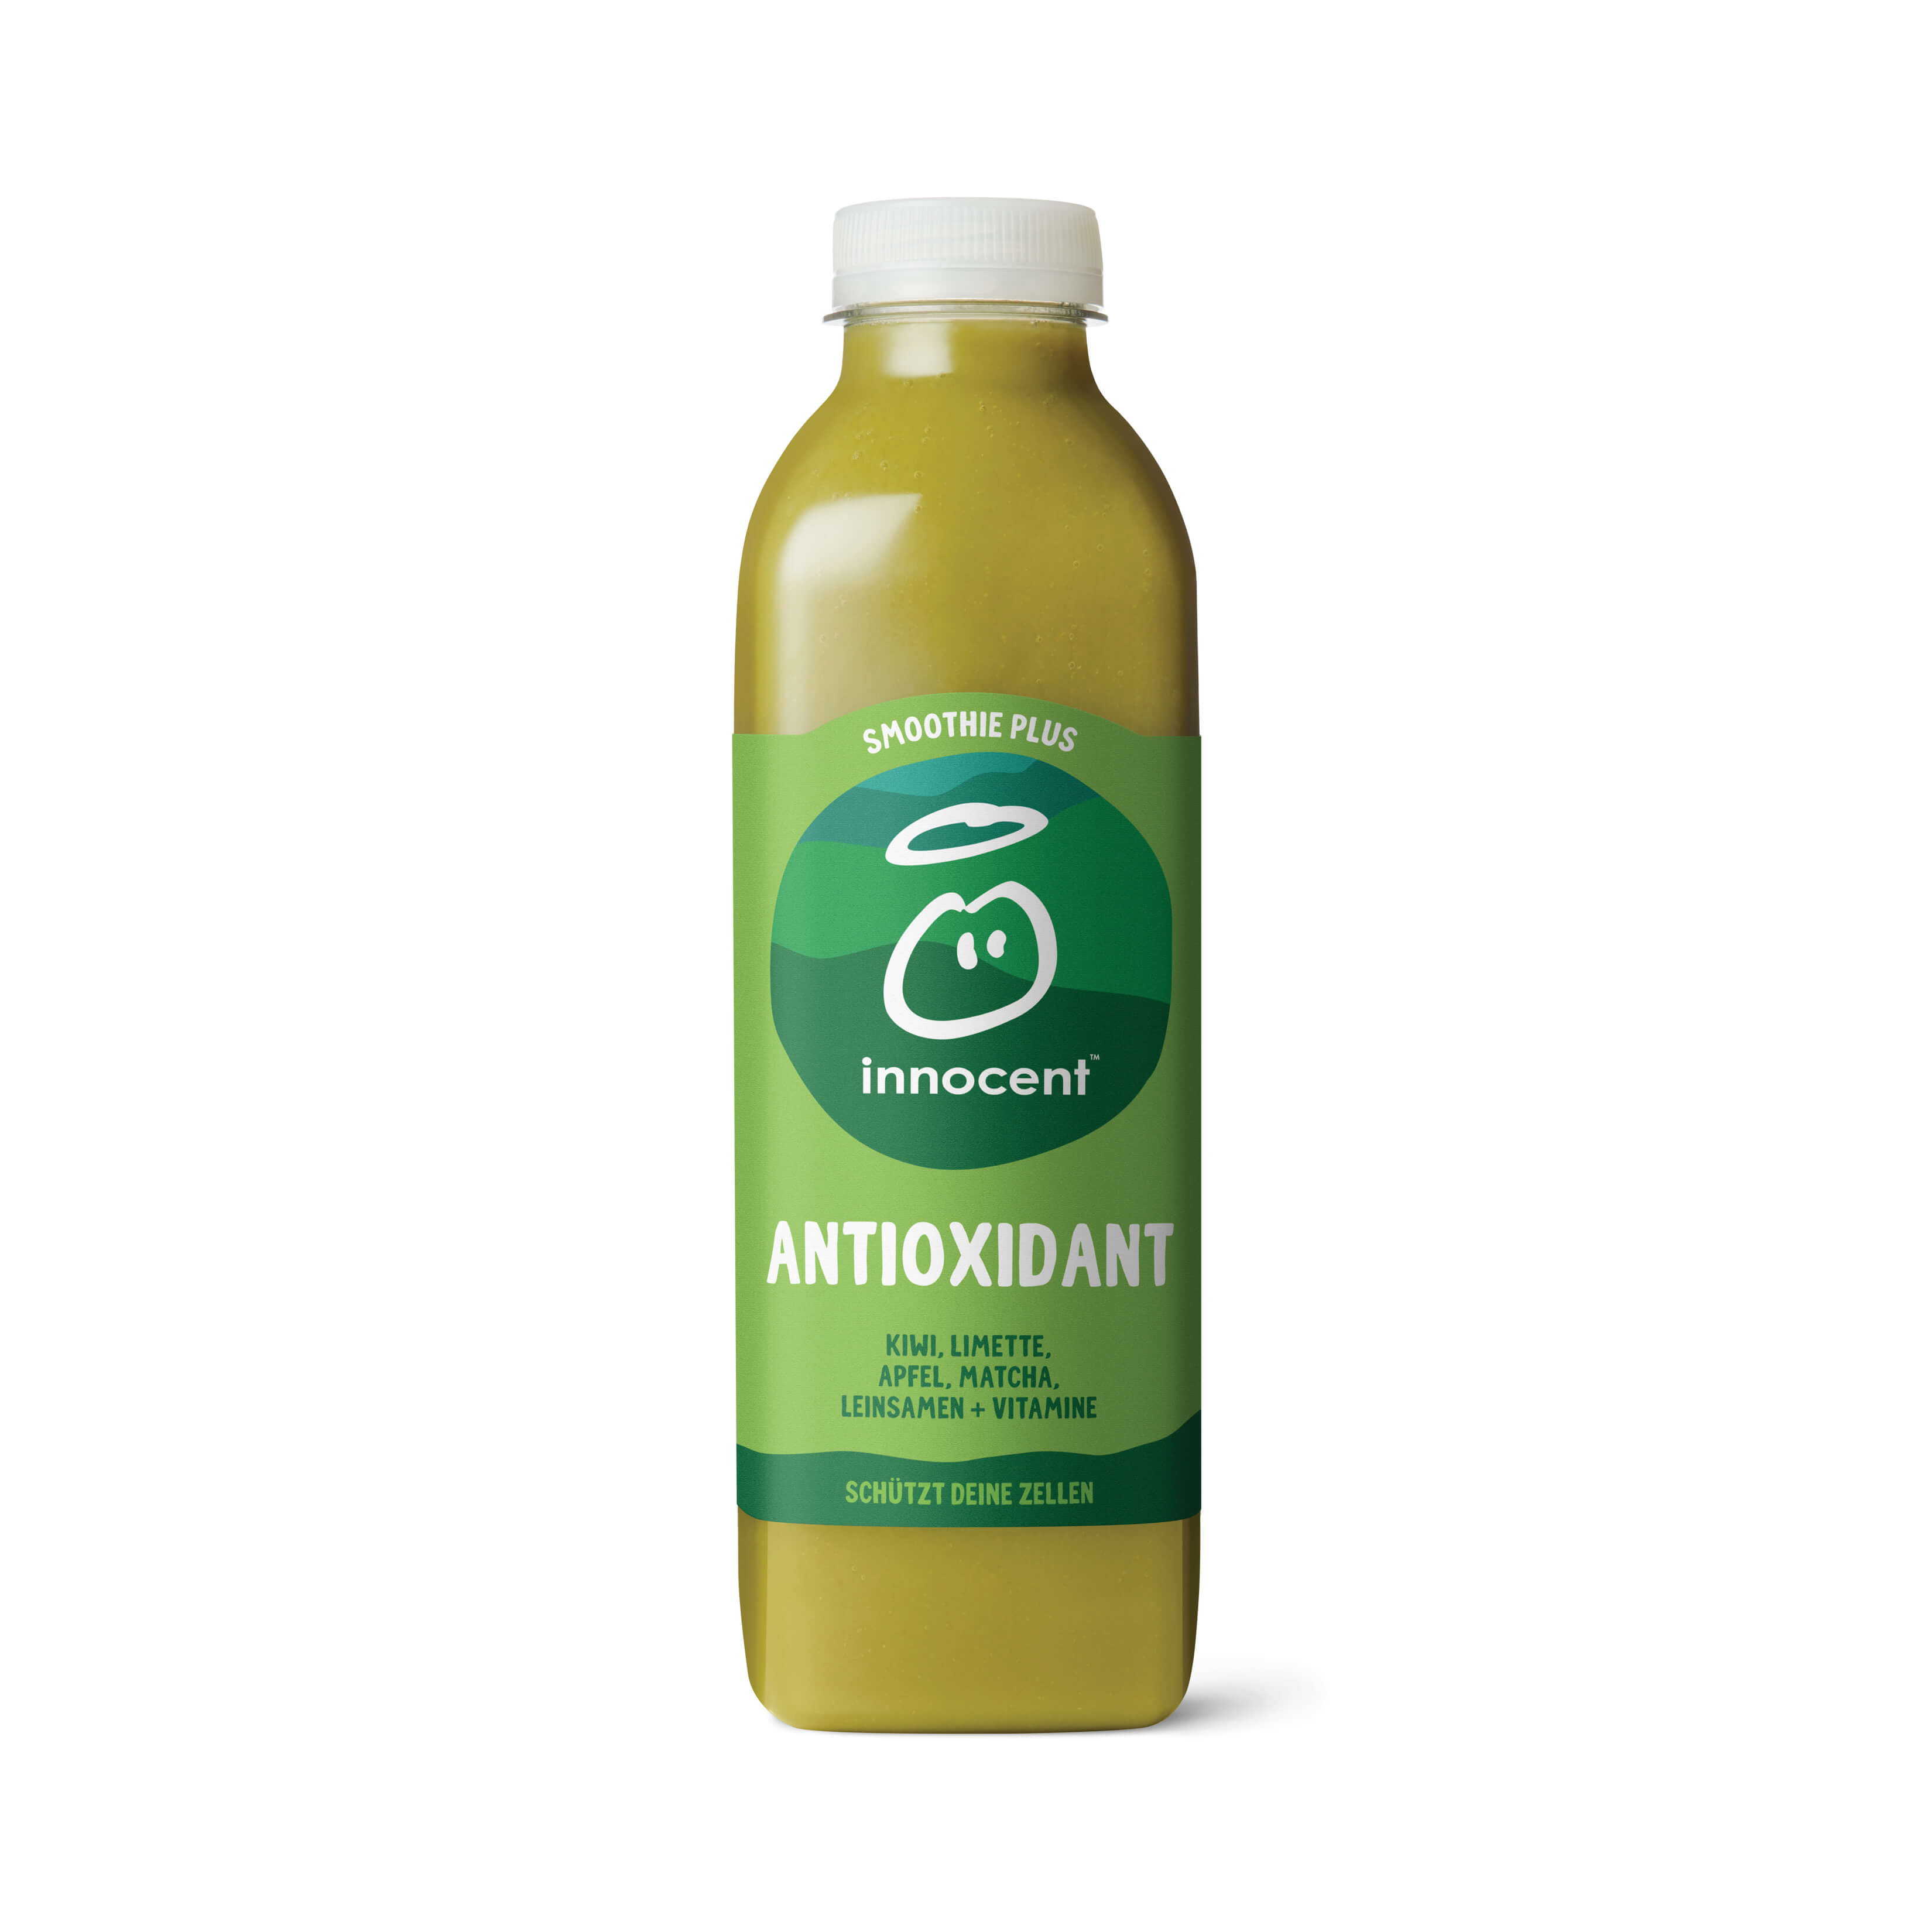 Antioxidant Smoothie Plus 750ml